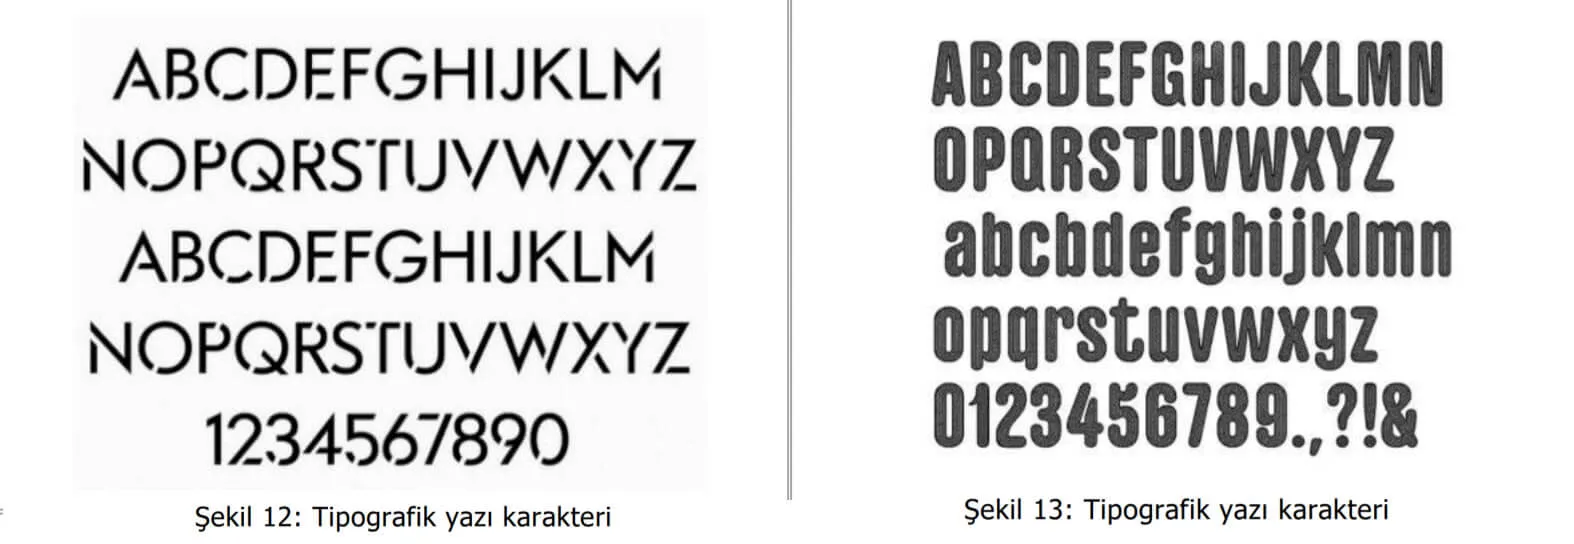 tipografik yazı karakter örnekleri-Afyon Patent